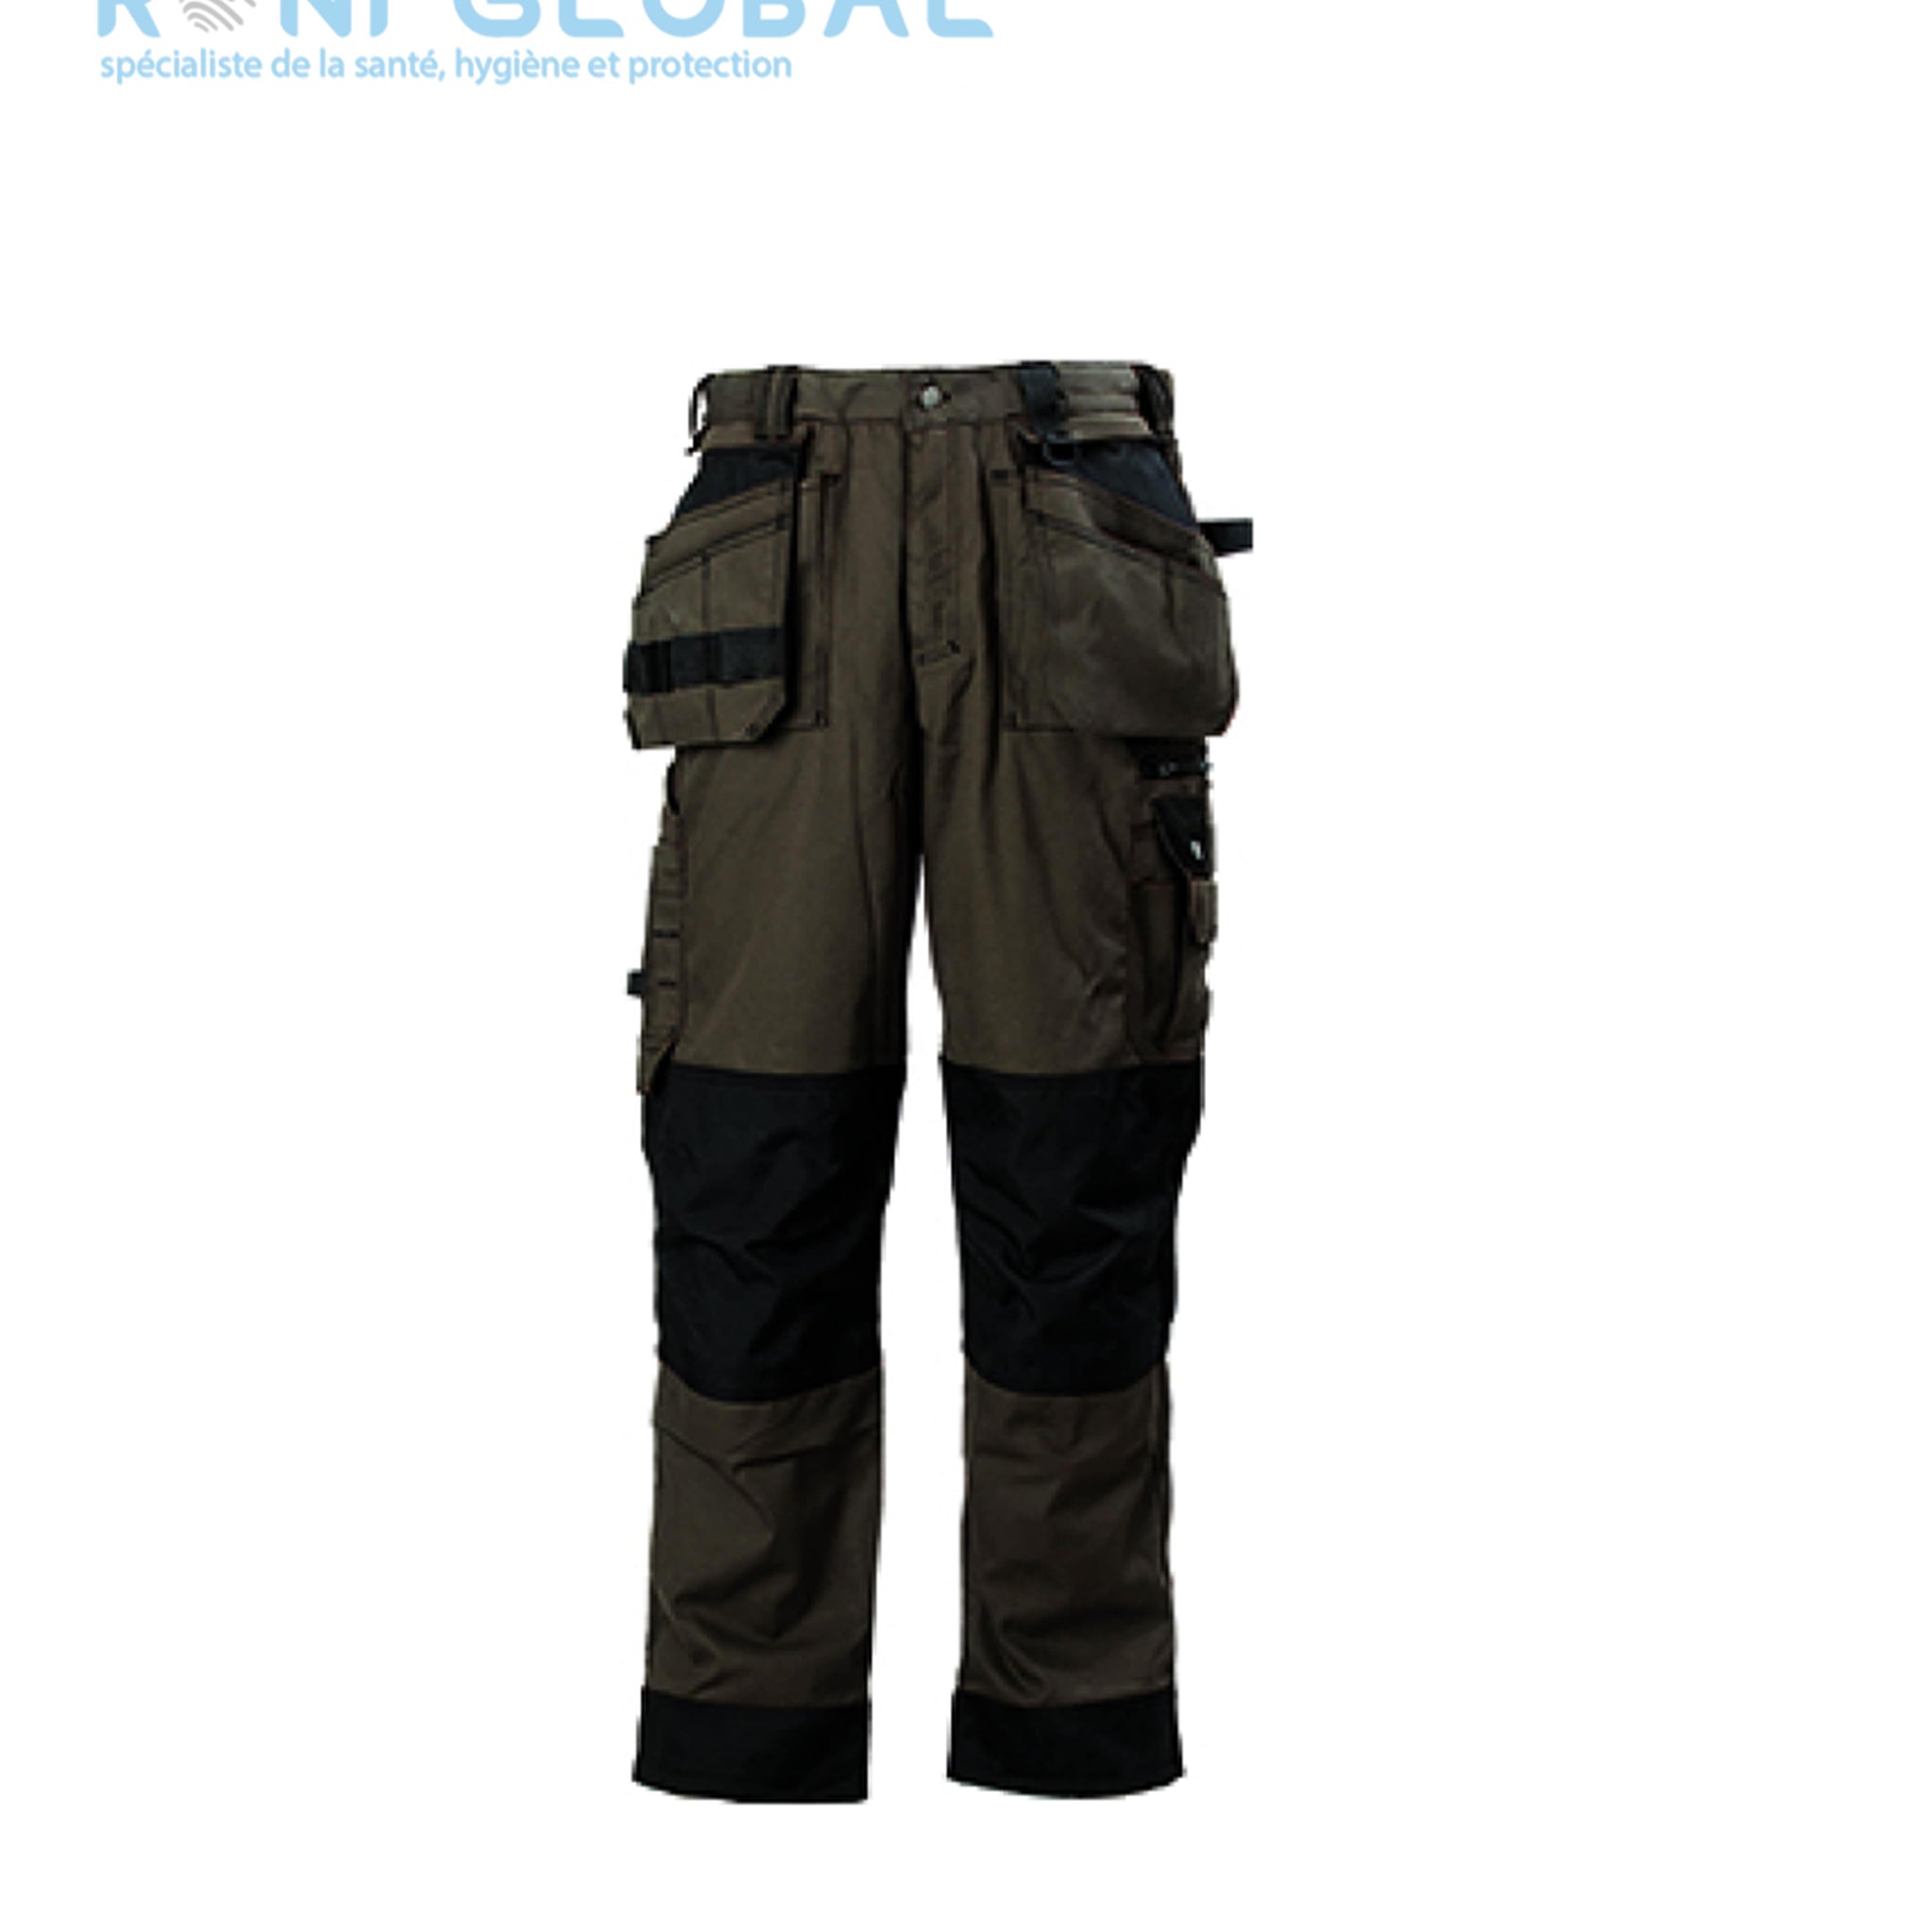 Pantalon de travail avec protection genoux en coton/polyester 11 poches TYPE 2 - BOUND COVERGUARD